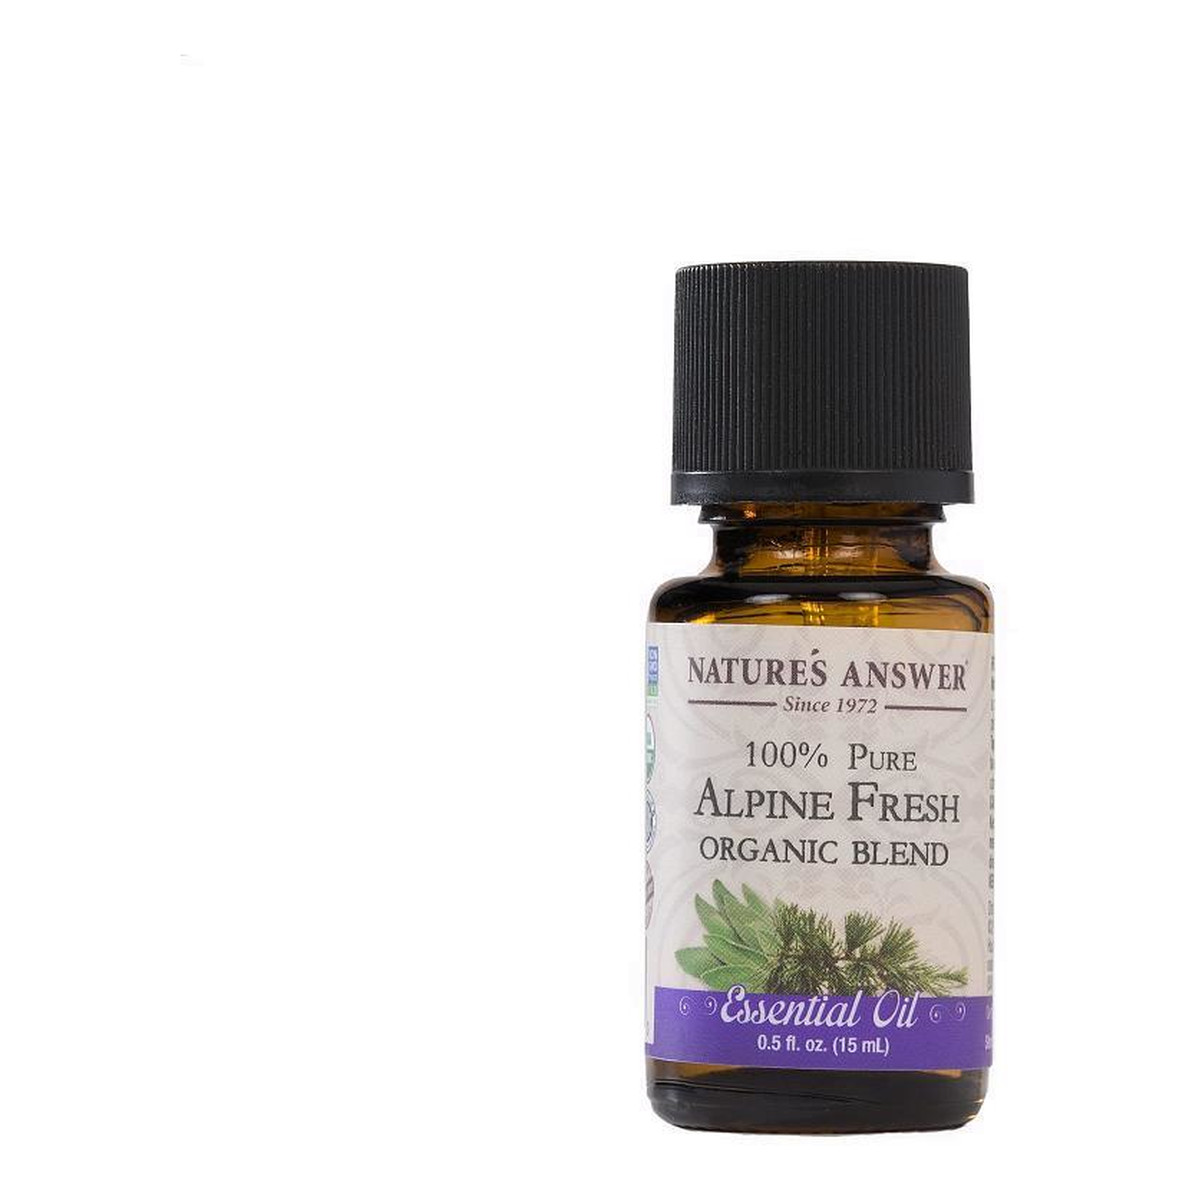 Nature's Answer 100% Pure Alpine Fresh Organic Blend Essential Oil organiczny olejek z jodły balsamicznej 15ml